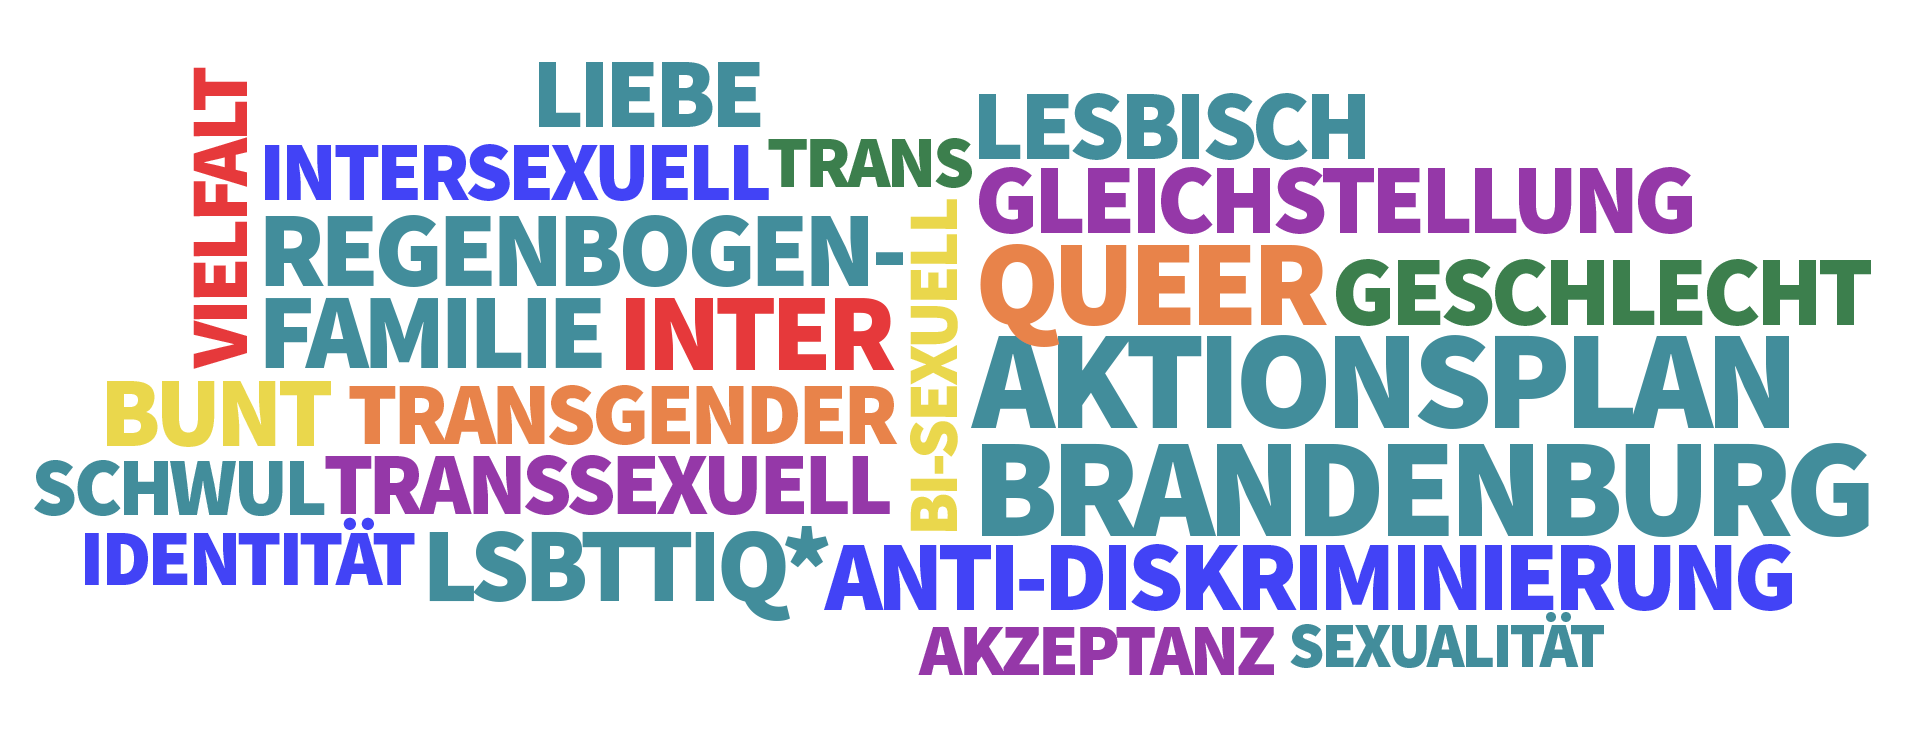 Aktionsplan Queeres Brandenburg